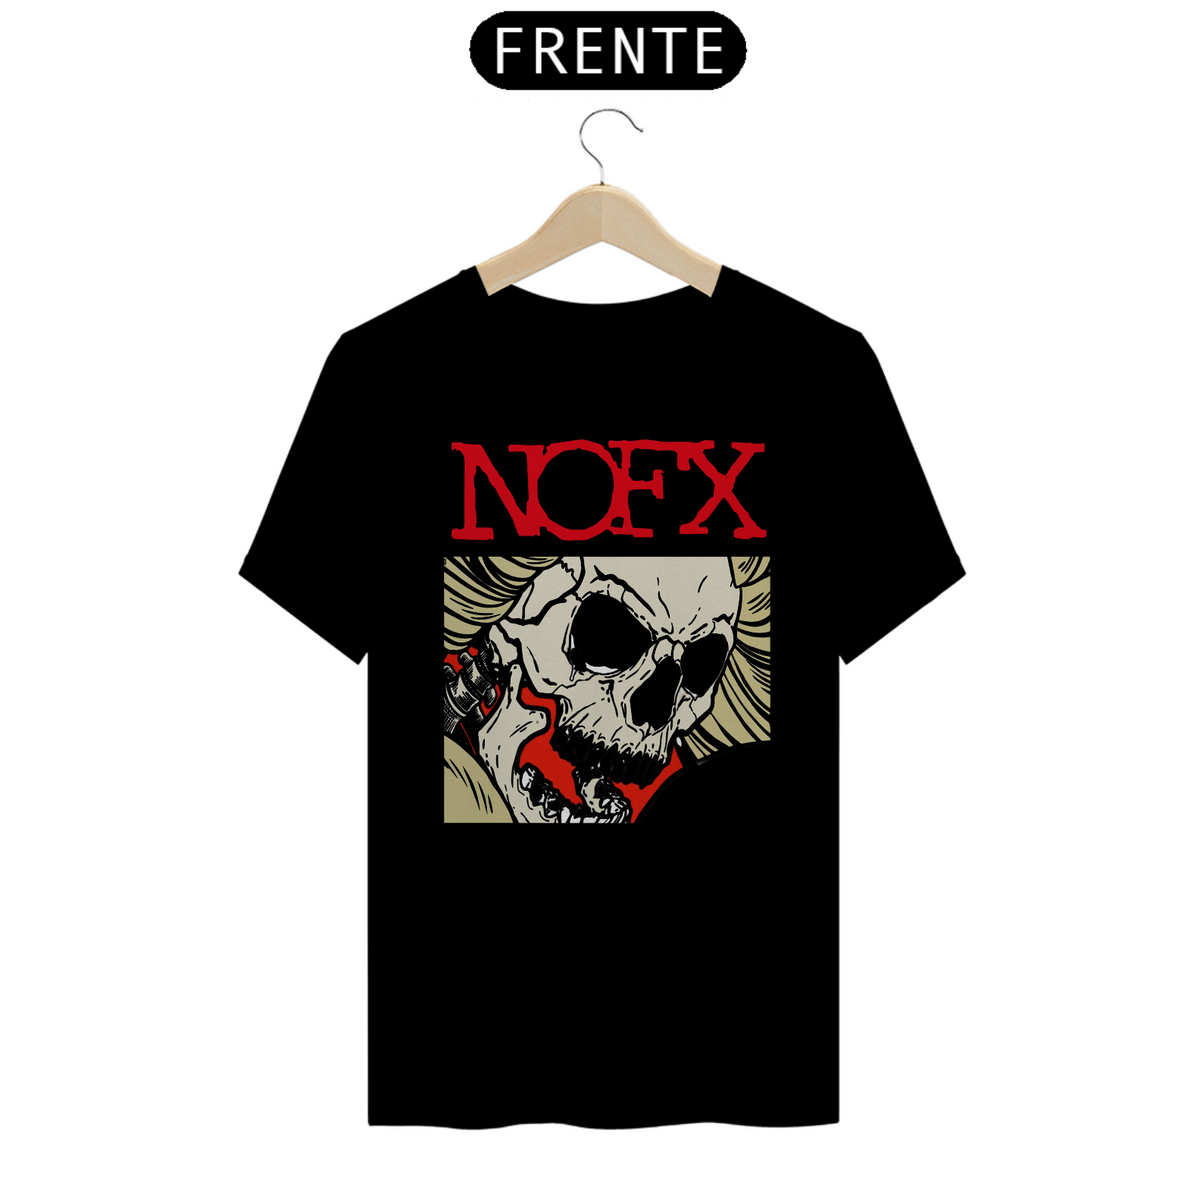 Nome do produto: NOFX